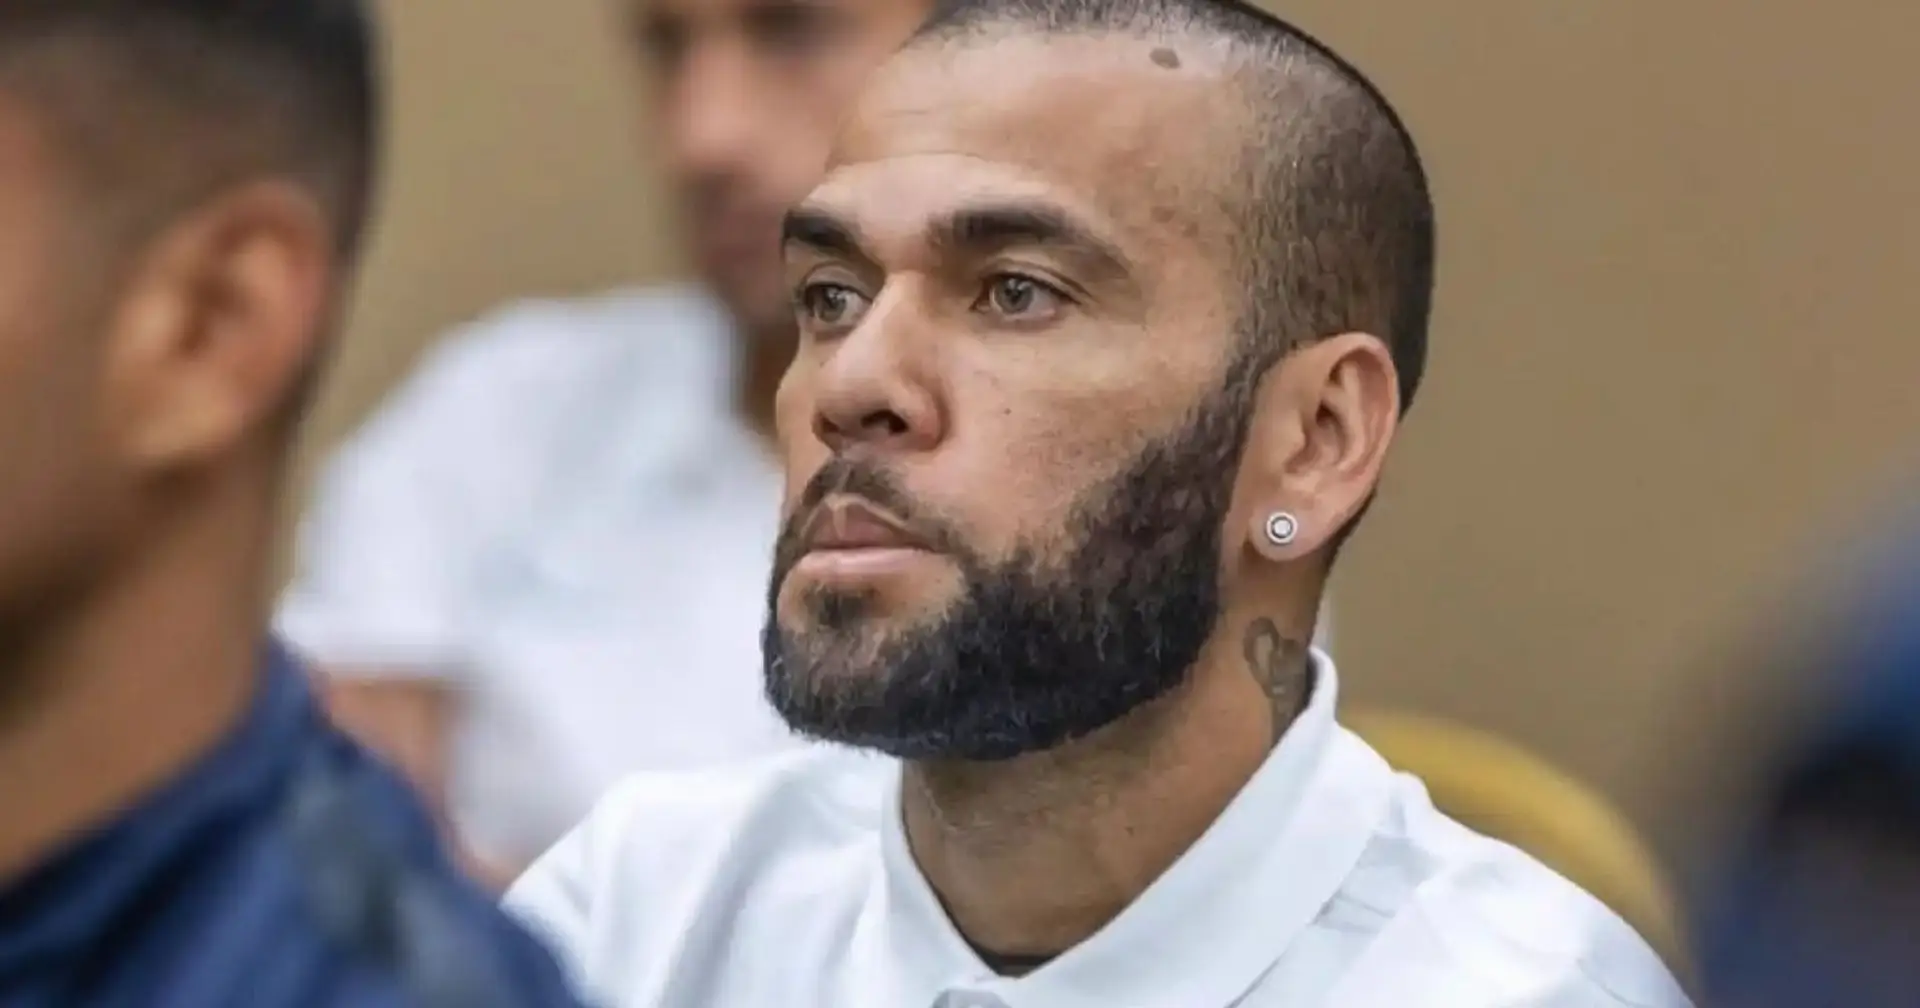 Dani Alves uscito di prigione: pagata la cauzione di un milione di euro